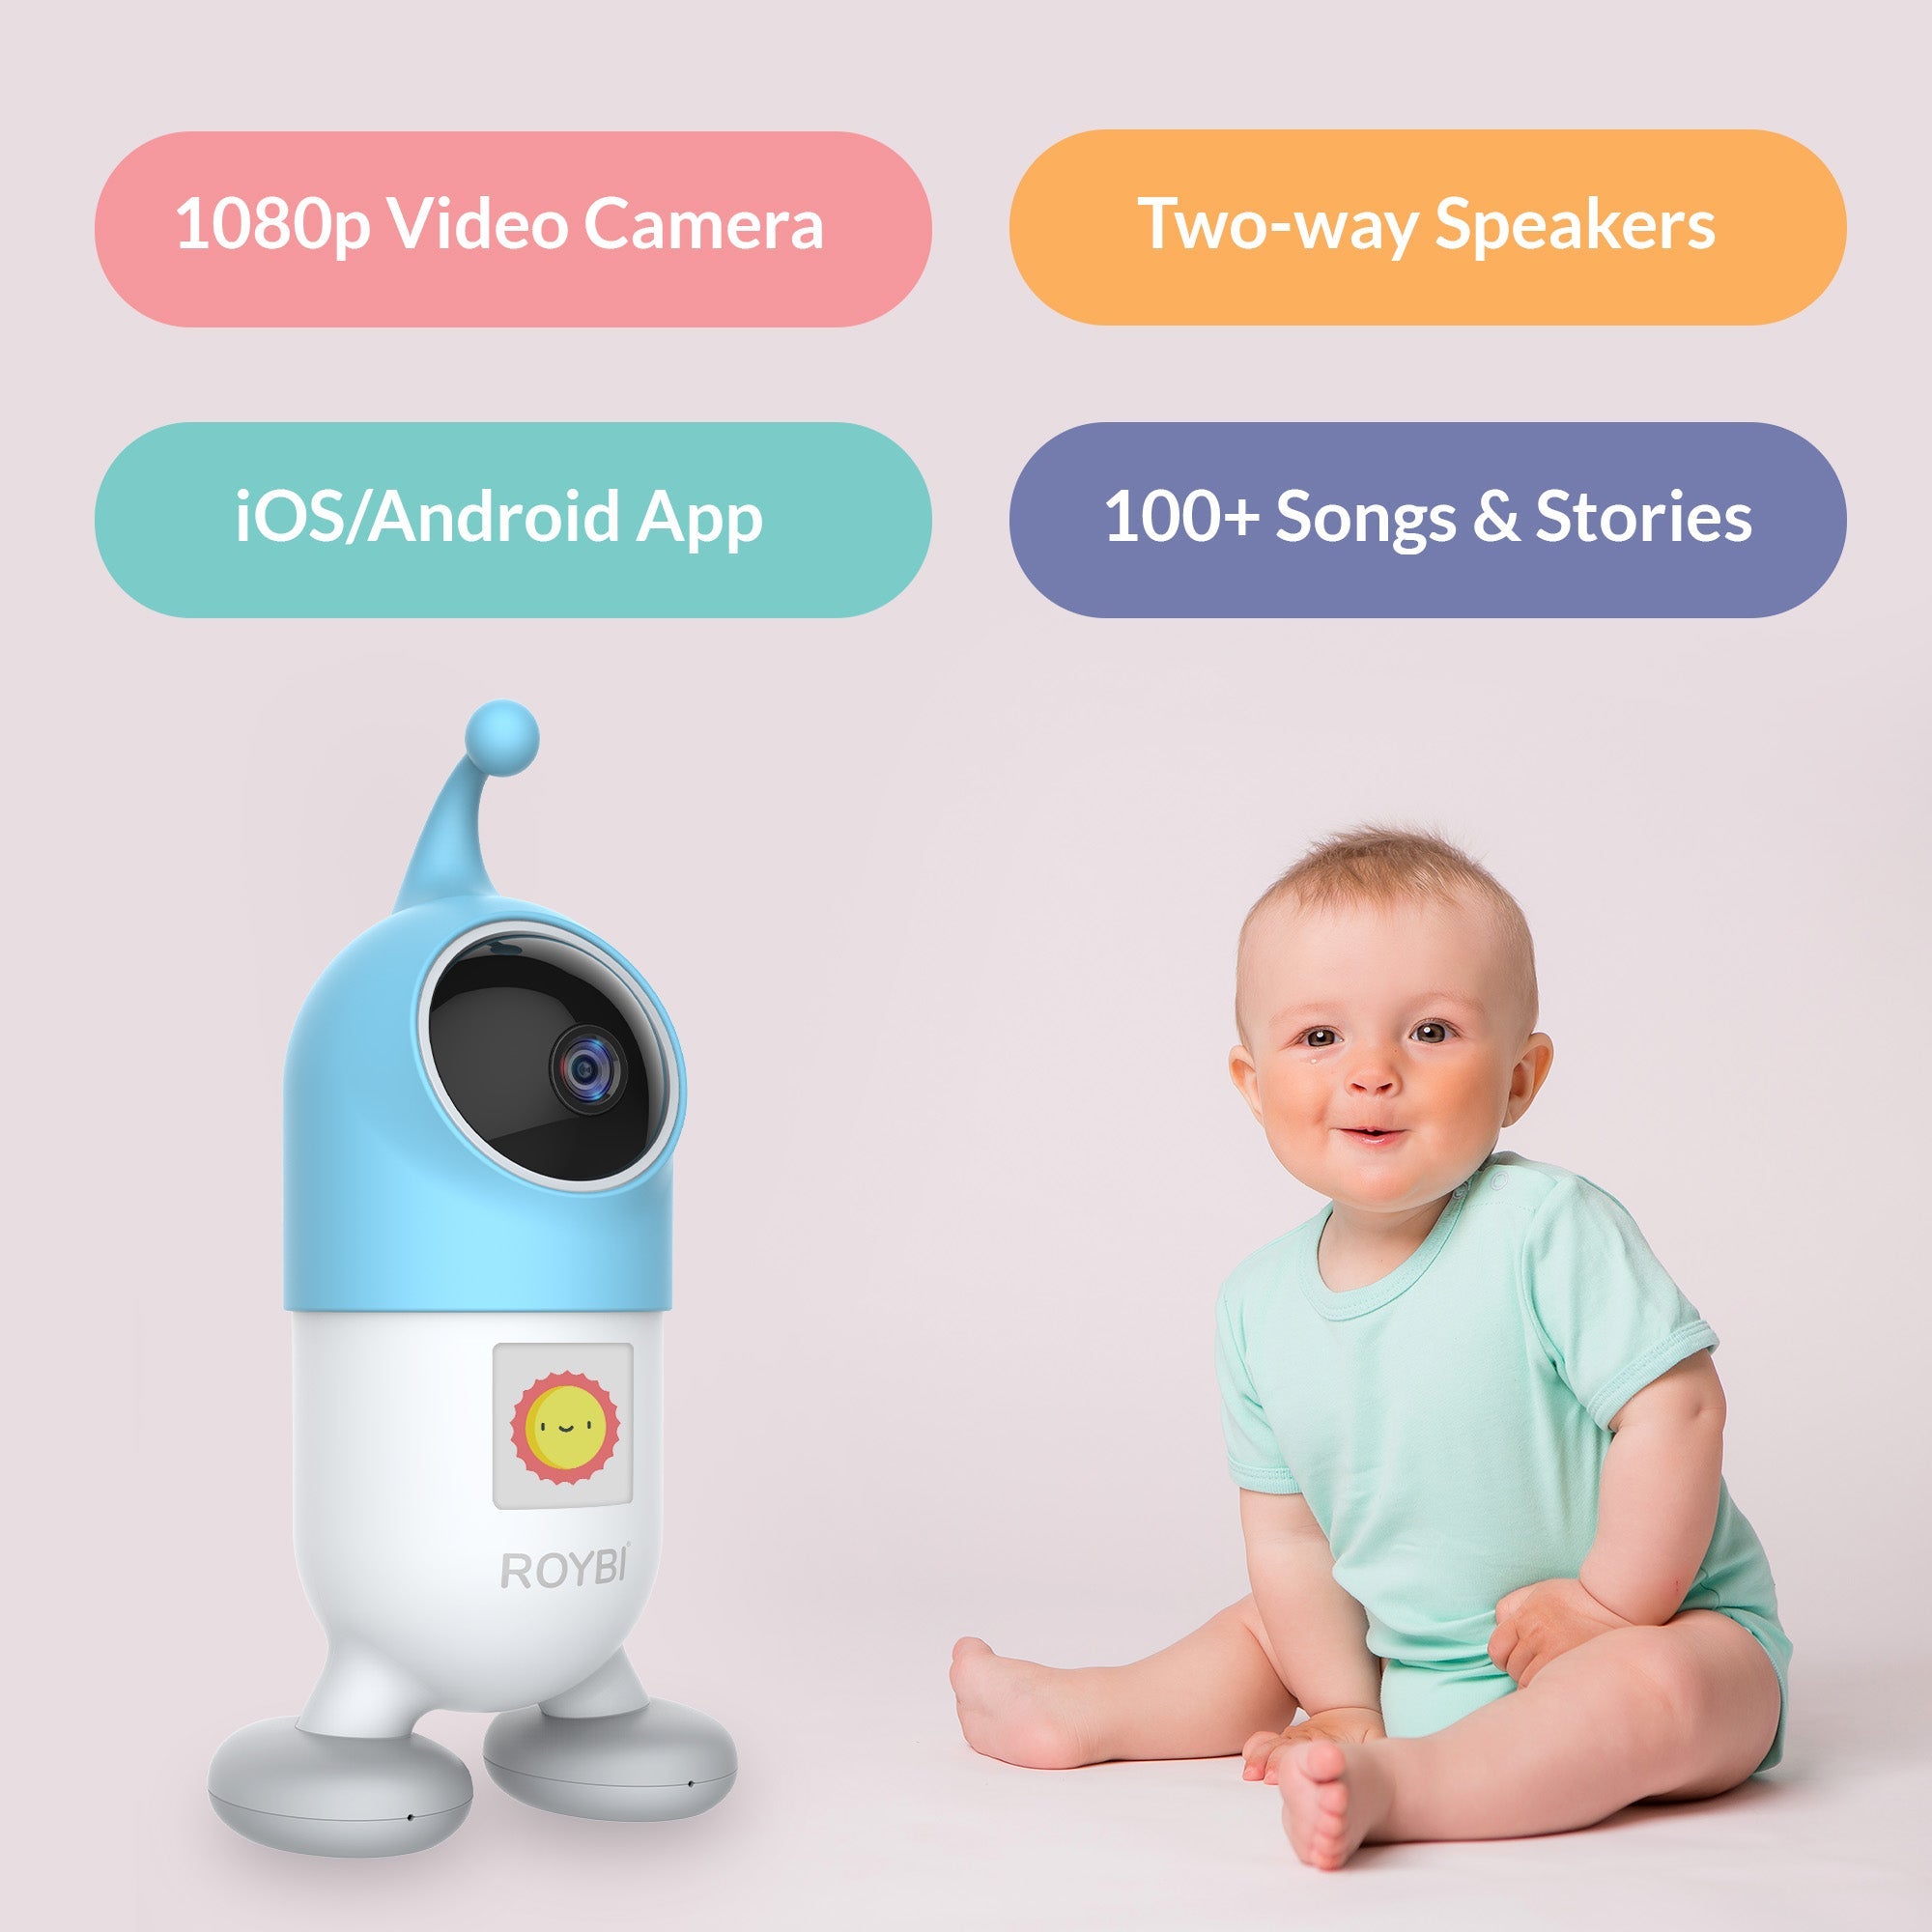 ROYBI Smart Baby Monitor - firstorganicbaby